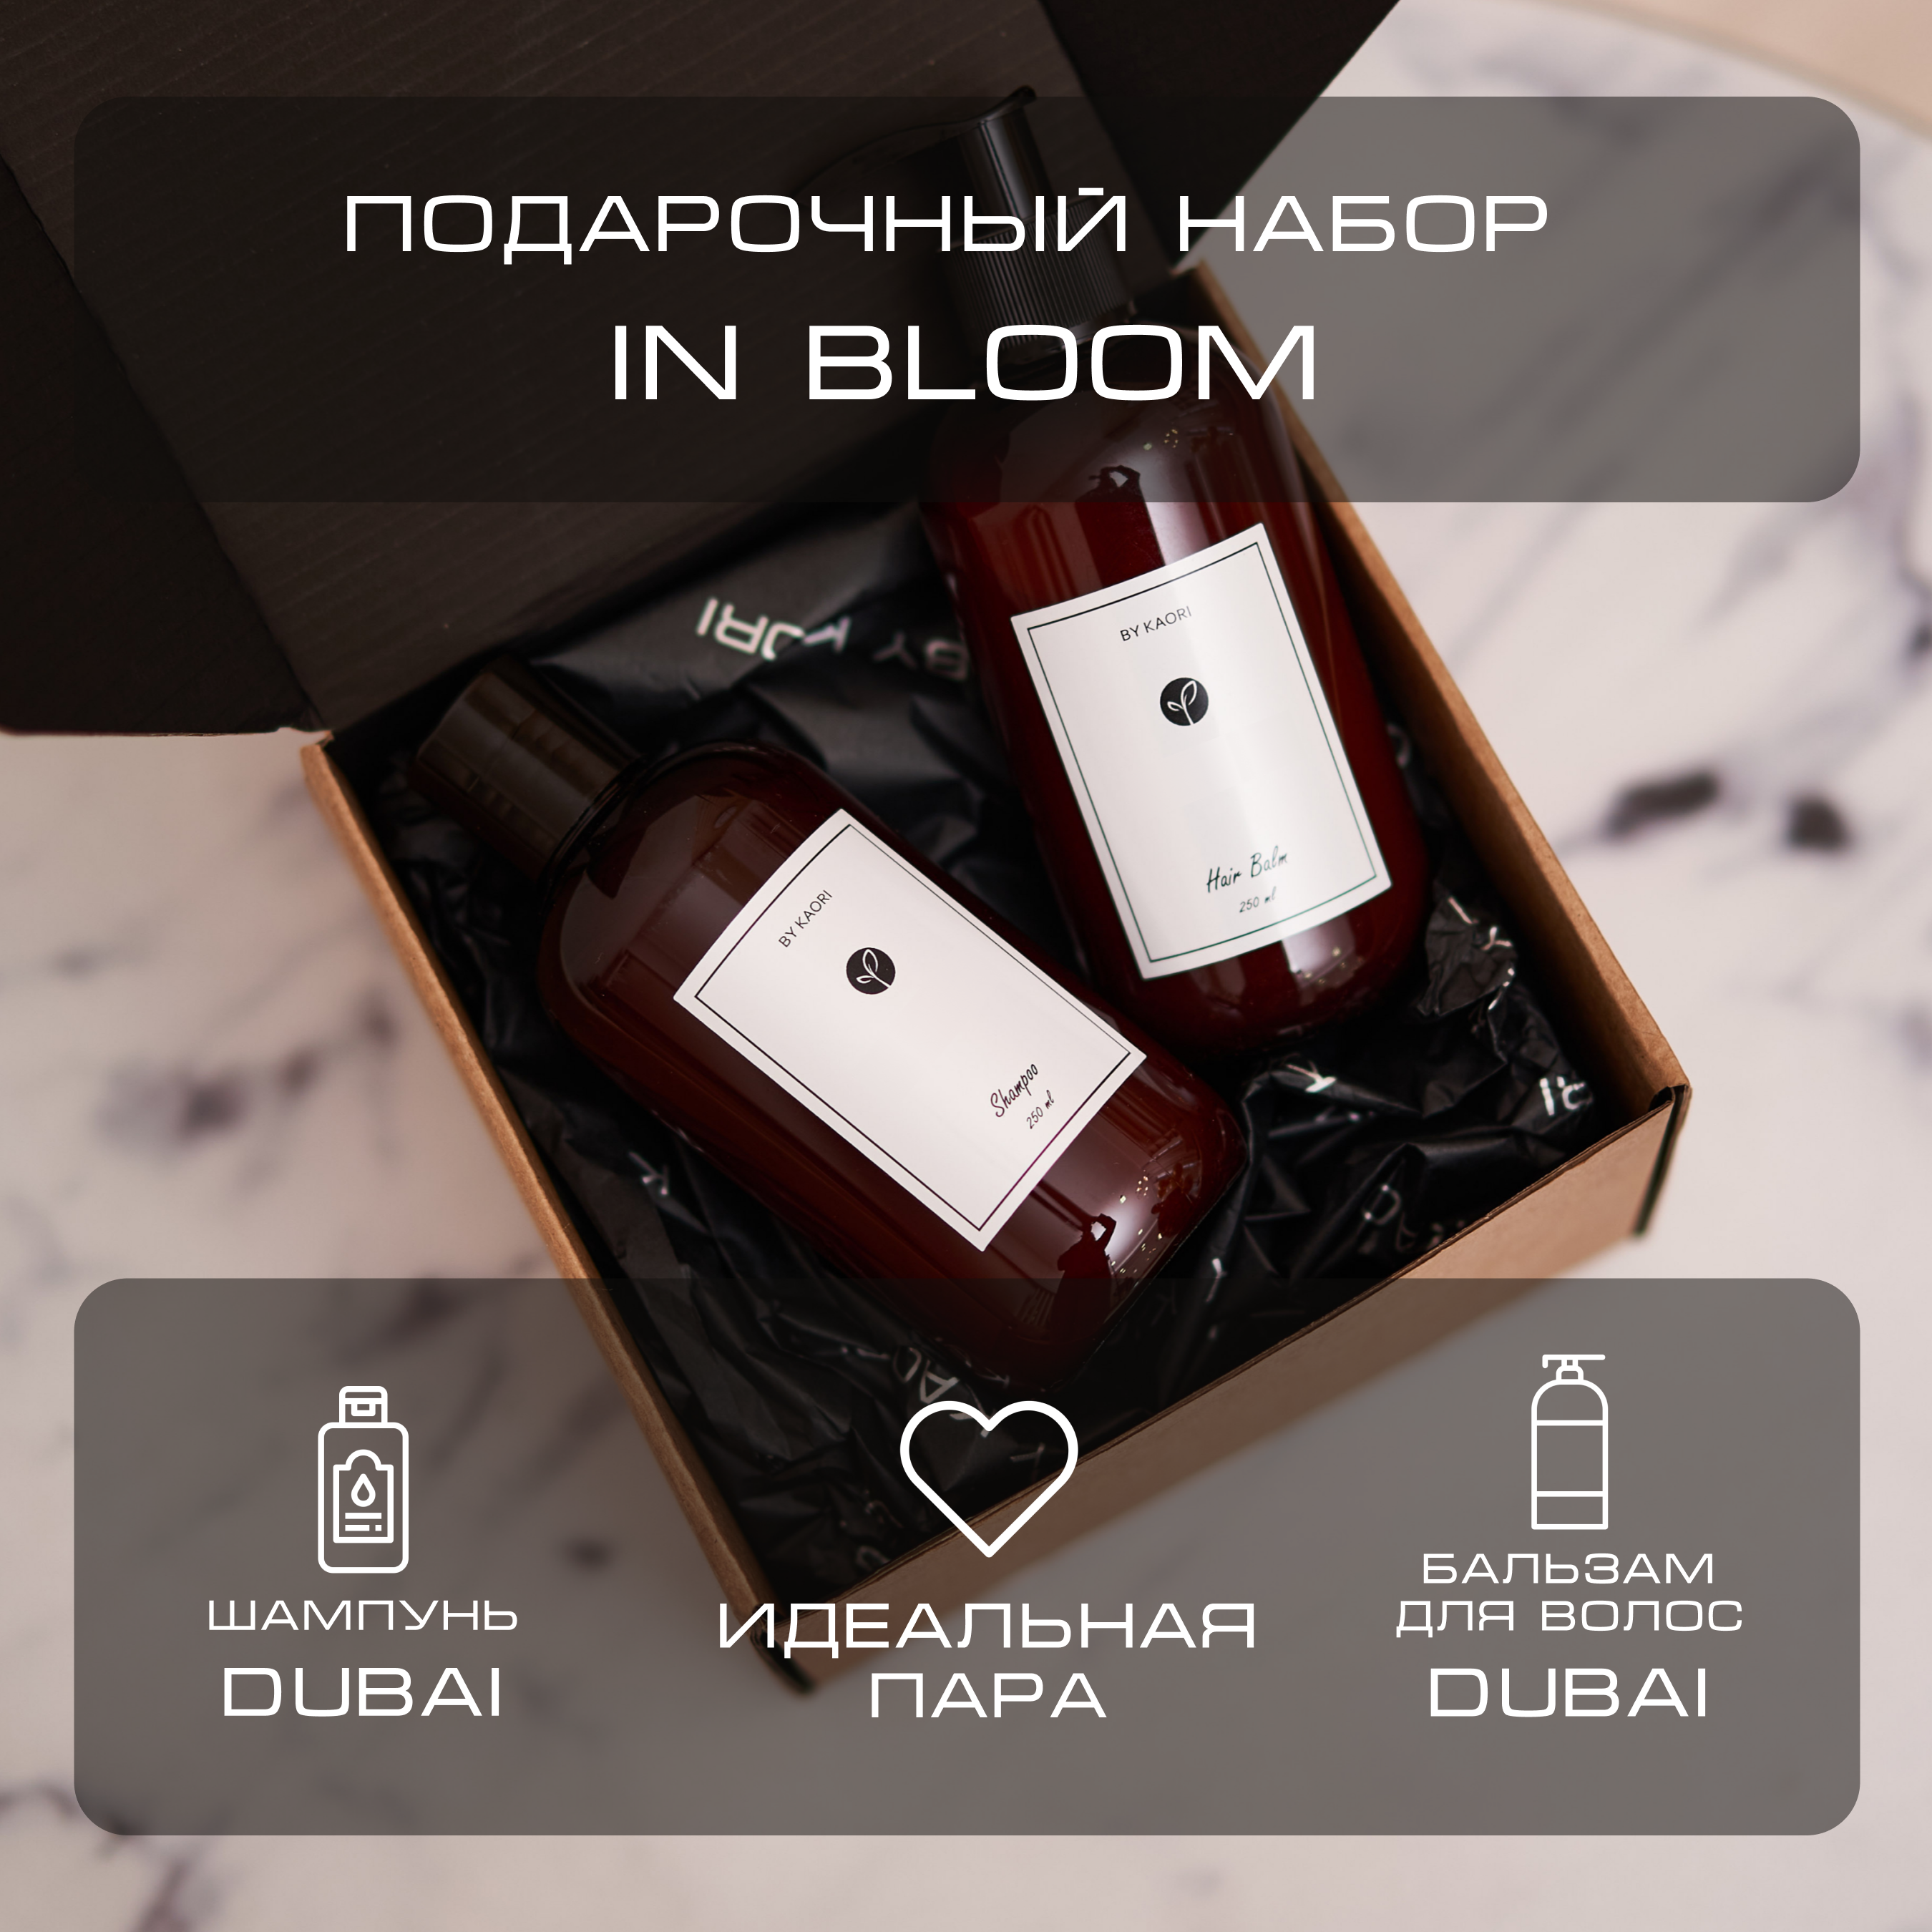 Набор подарочный By Kaori In Bloom шампунь и бальзам для волос Dubai набор подарочный by kaori in bloom шампунь и бальзам для волос dubai